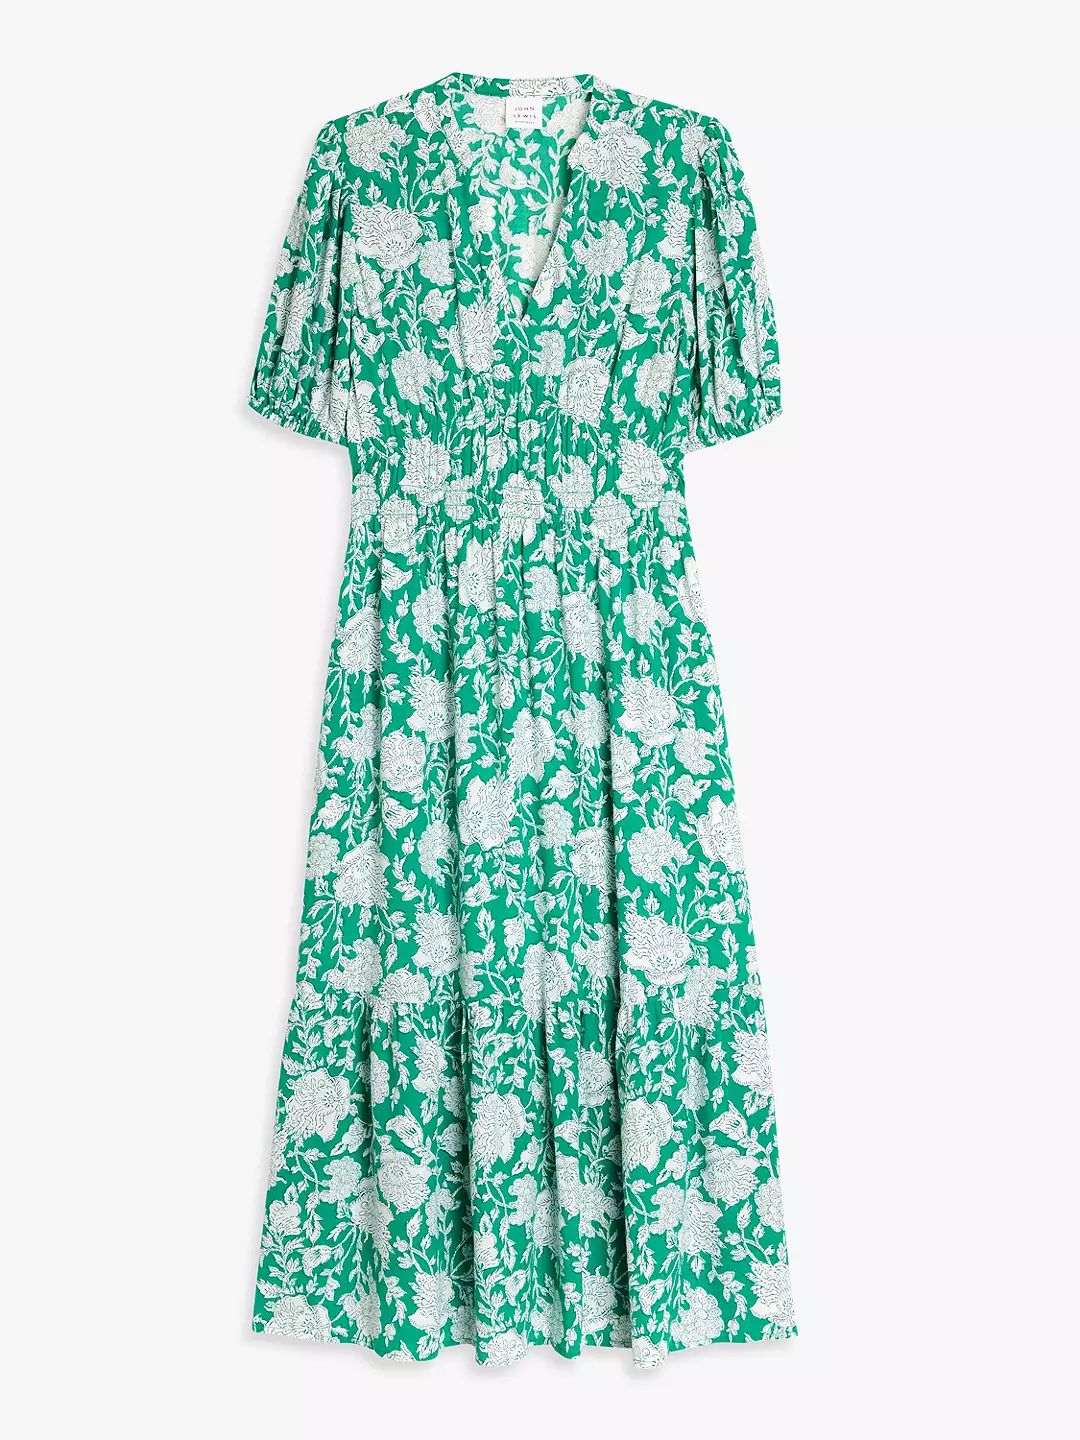 John Lewis Floral Sheered Dress, Green/Multi | John Lewis (UK)